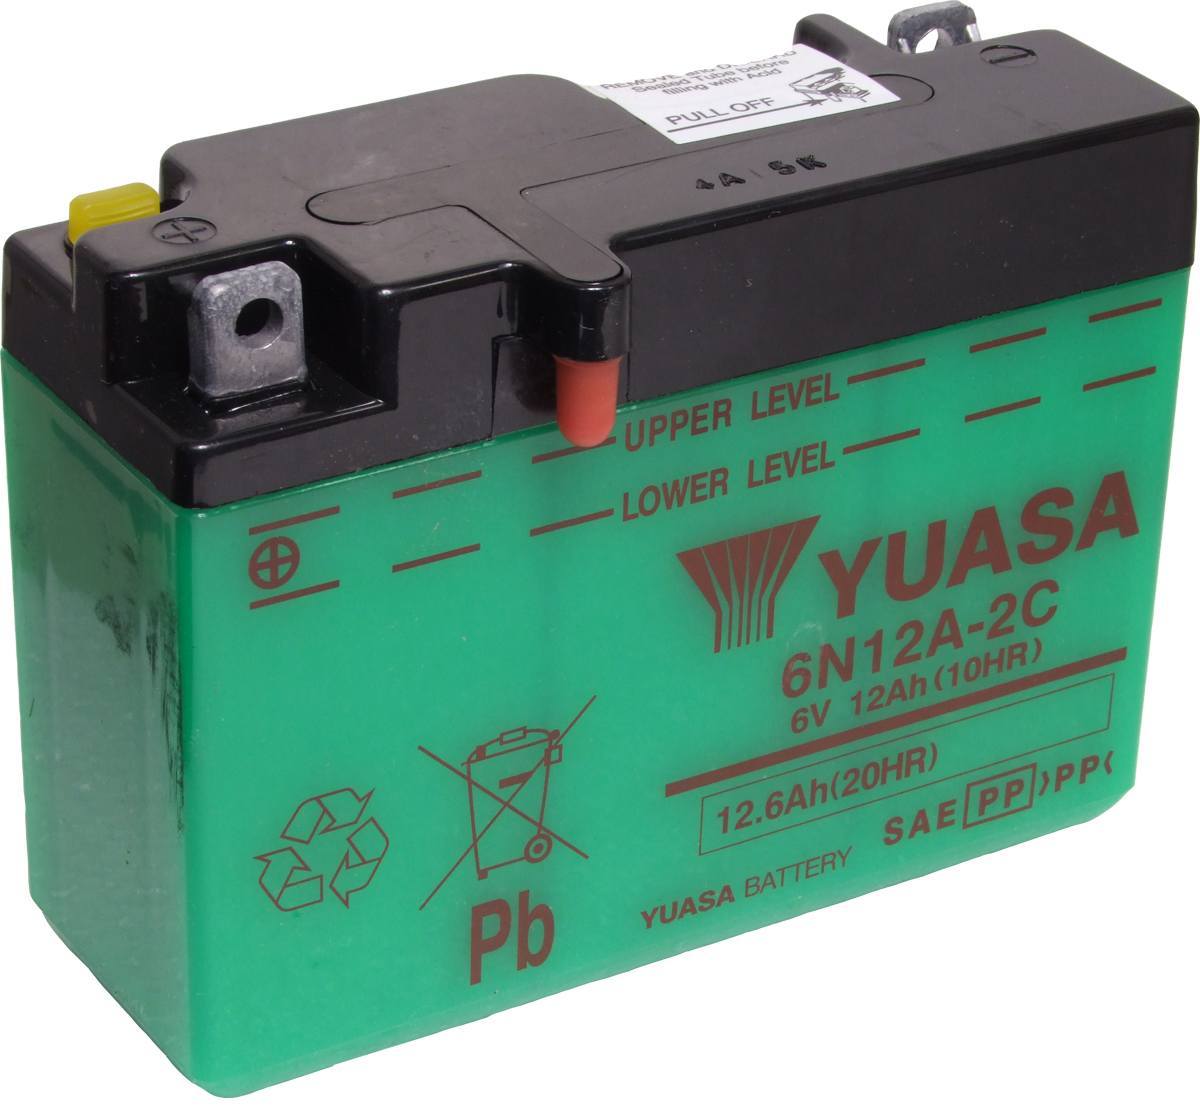 Batterie YUASA 6V CB125T livrée sans acide 6N6-3B 326N63B